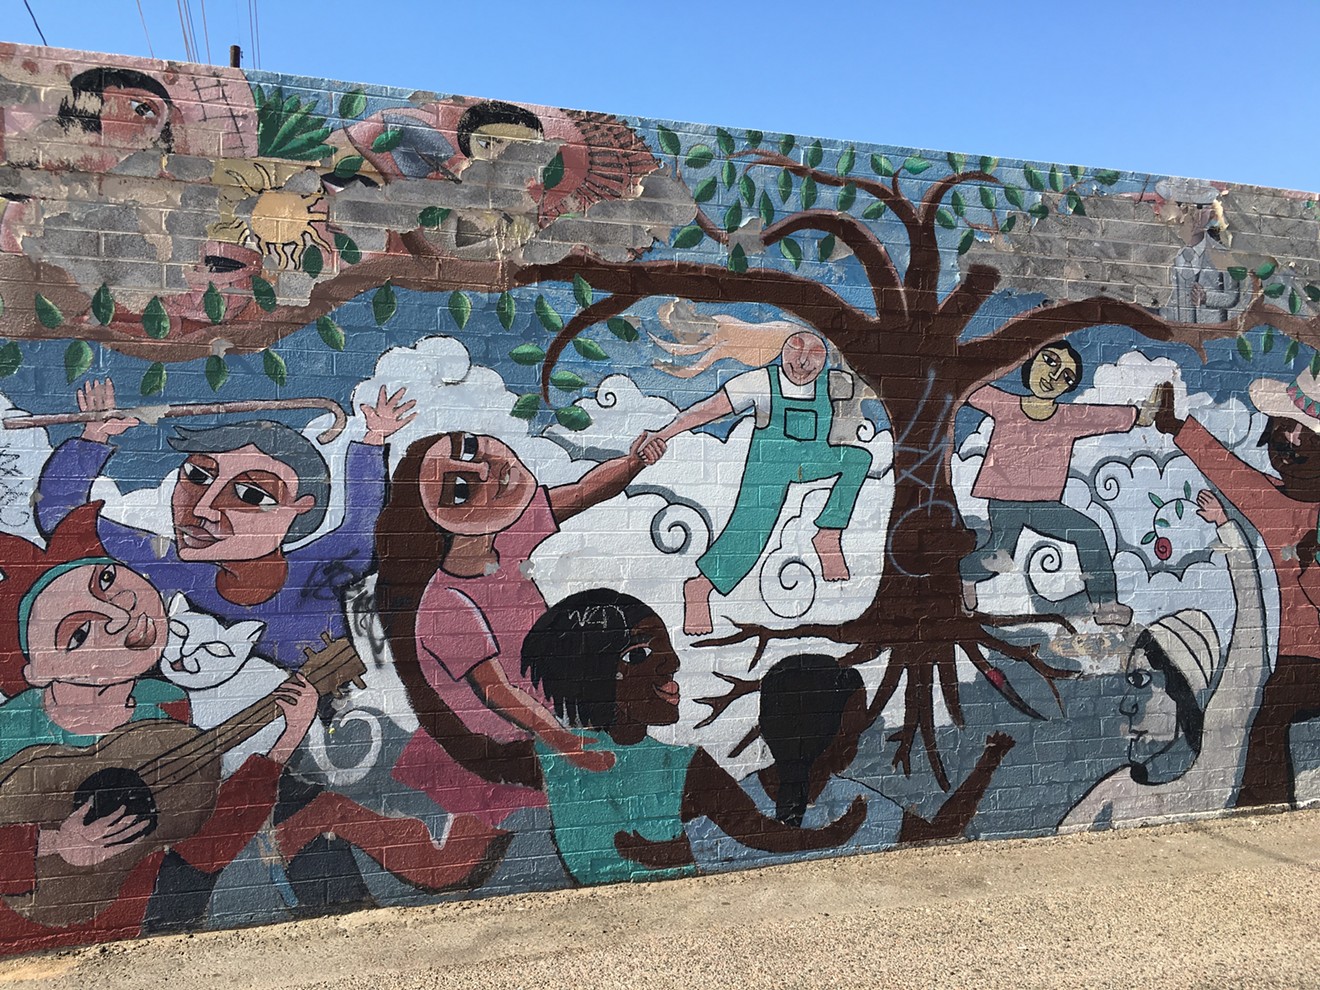 Detail of Rose Johnson's mural on 16th Street.